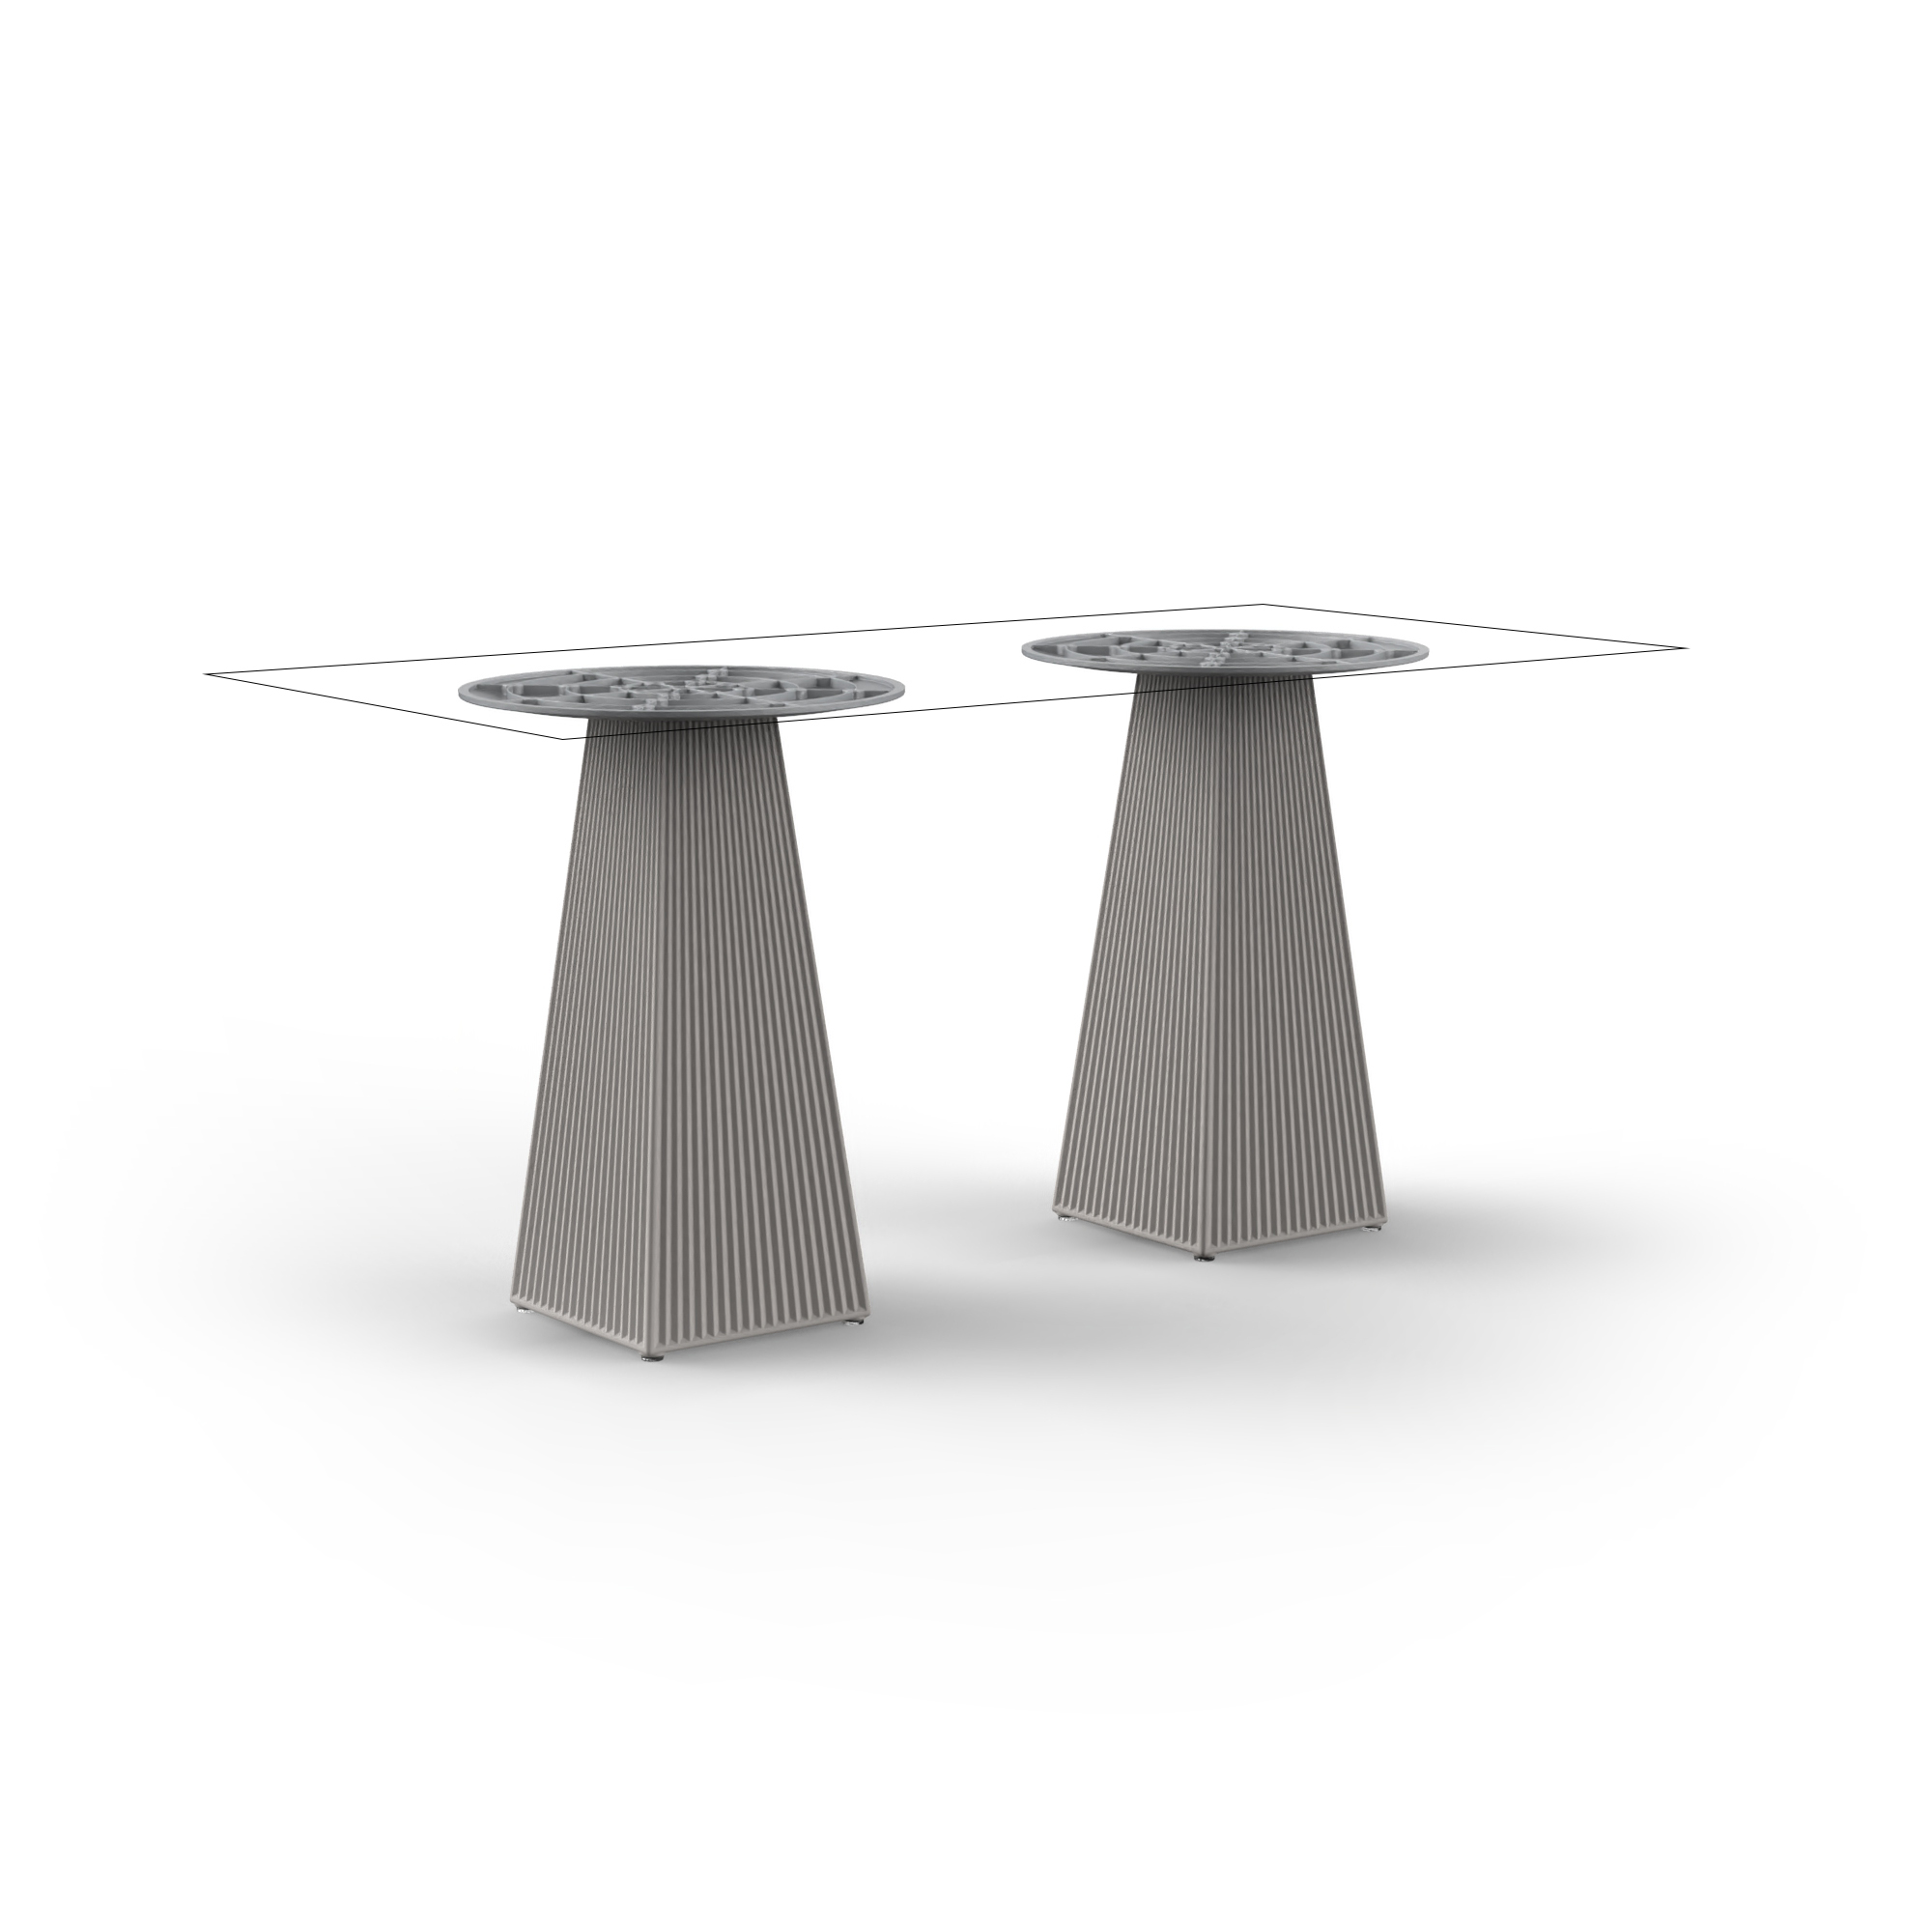 Gatsby tafel - Hoog/vierkante voet/dubbele voet: 158x79x73 cm (1 formaat tafelblad)